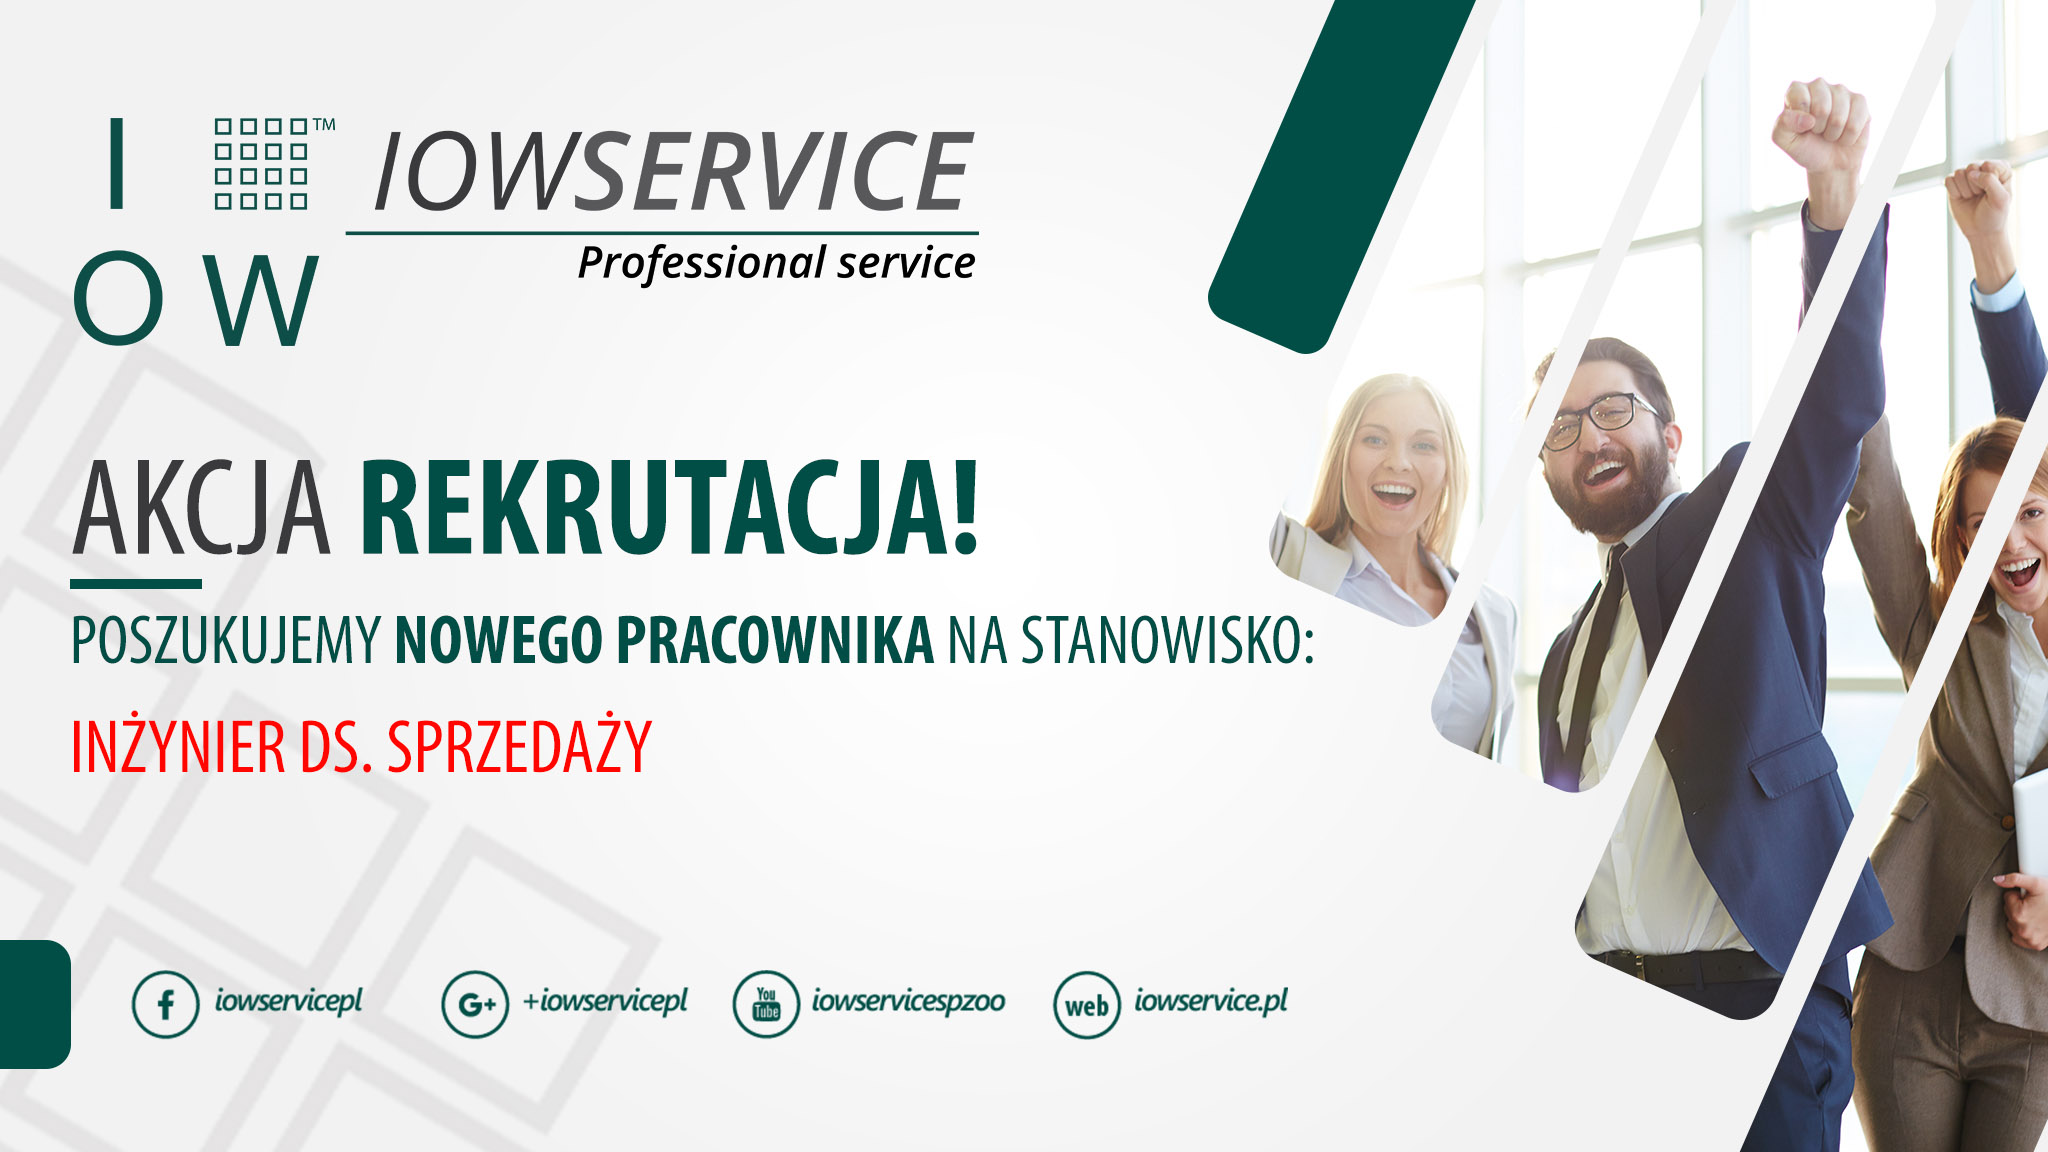 iow service